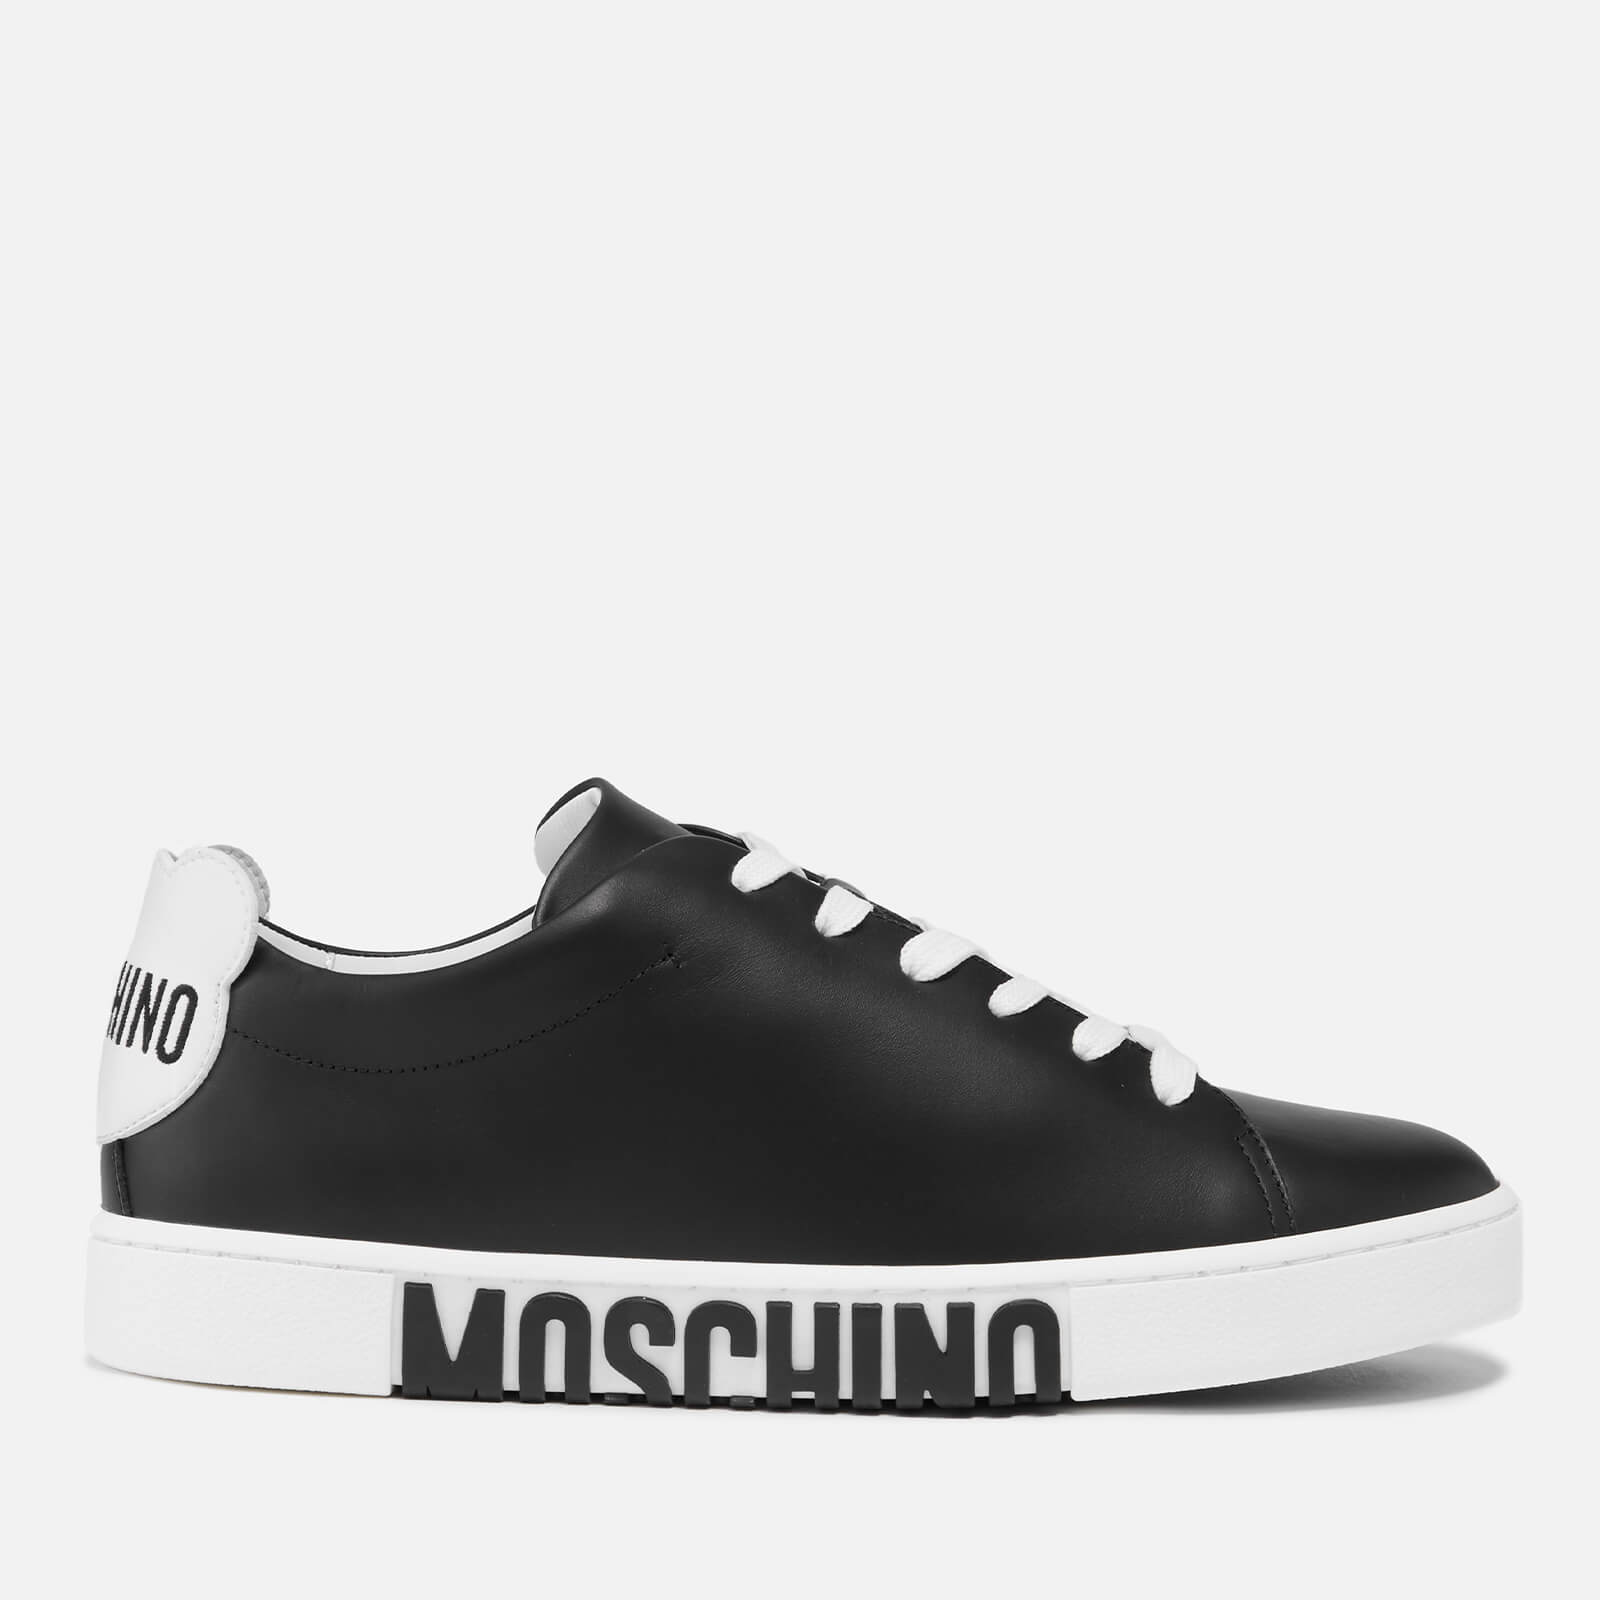 Moschino Women's Logo Sneakers - Black/White - UK 8